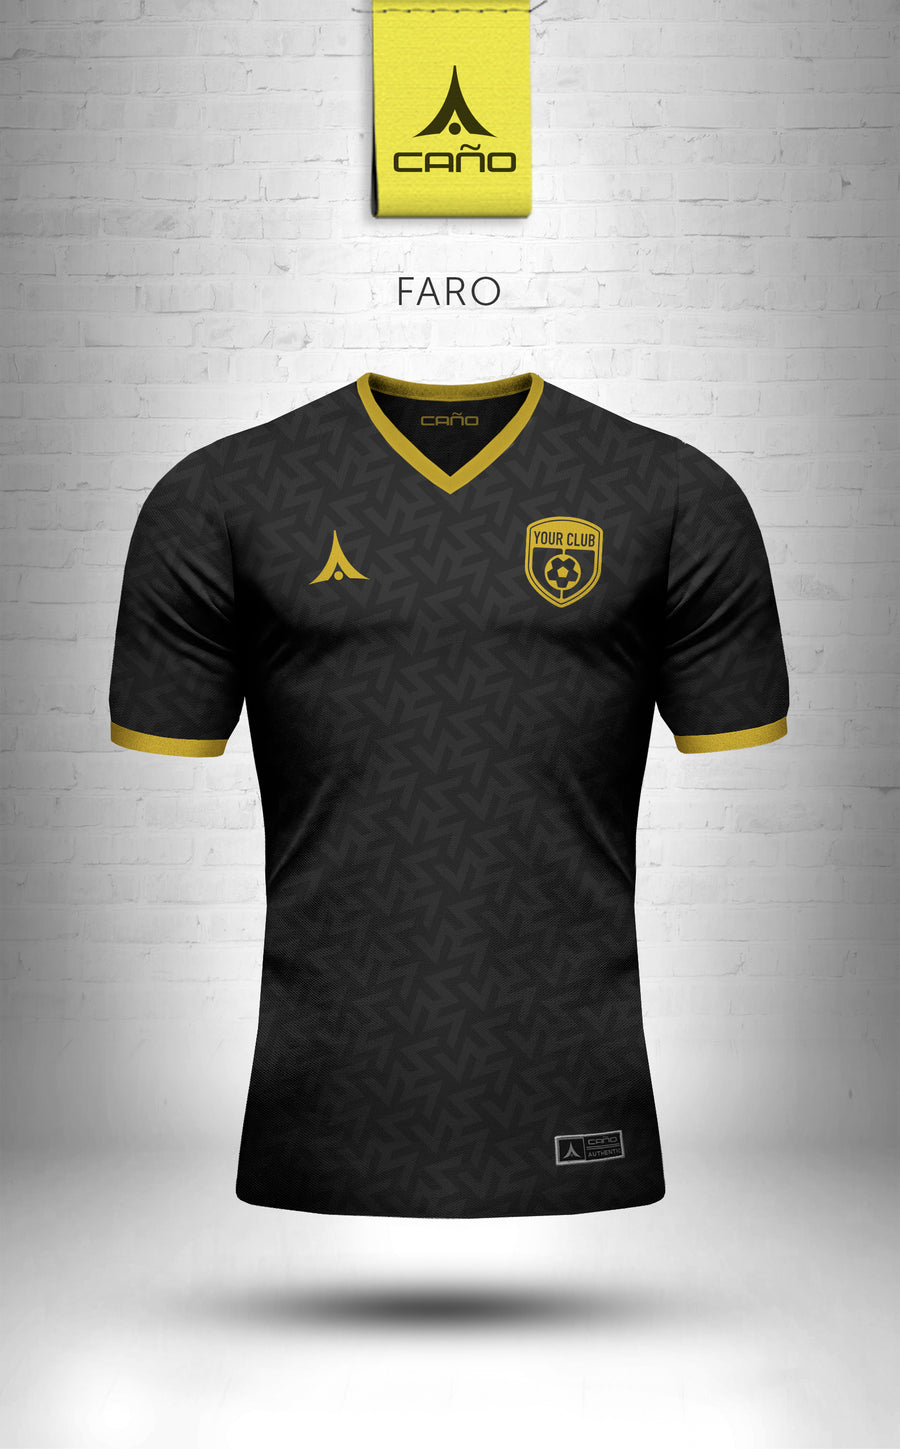 Faro in black/gold